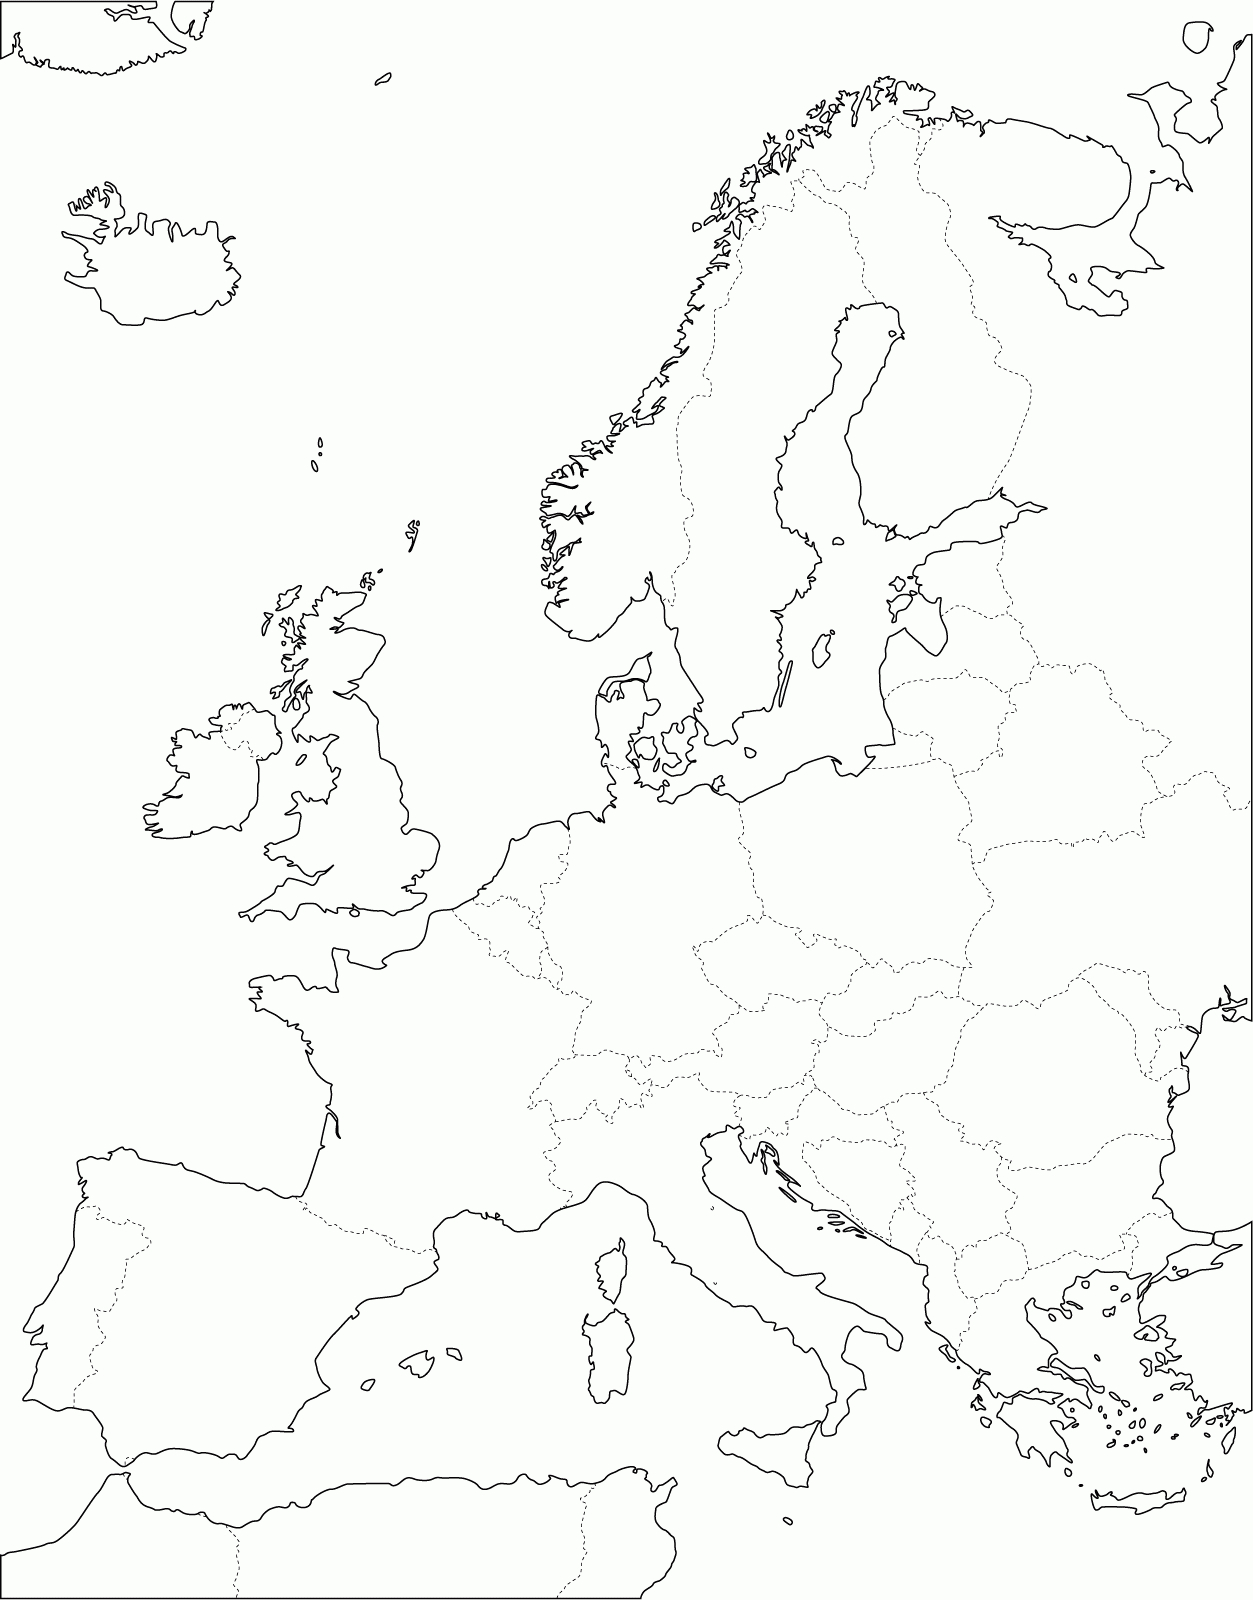 Grande Carte D'europe Vierge Et Blanche À Compléter | Carte intérieur Carte De France A Remplir